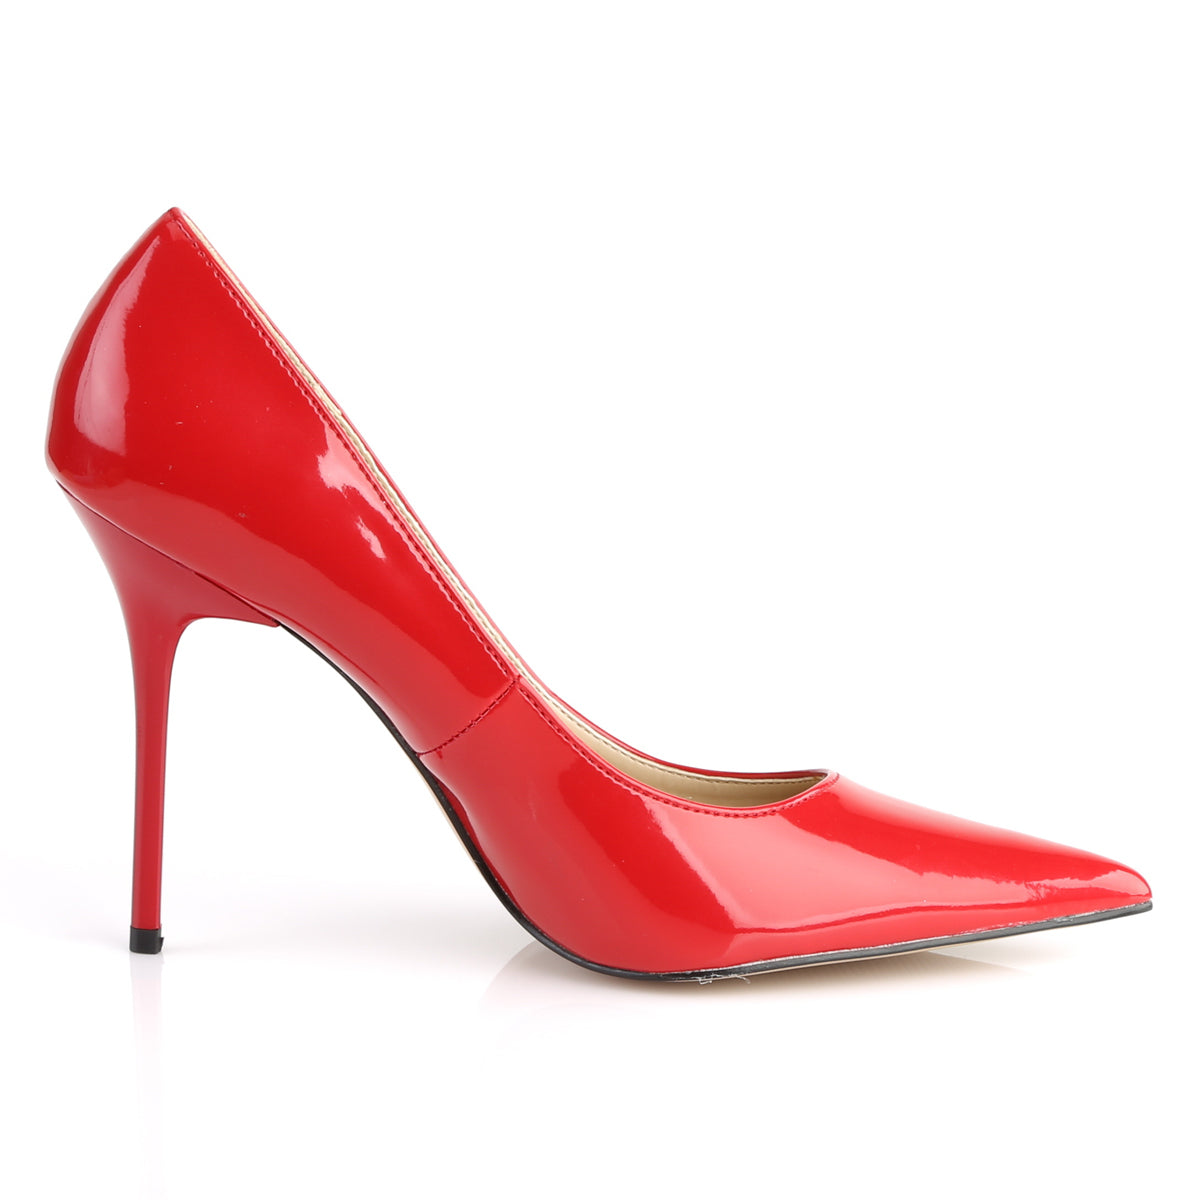 CLASSIQUE-20 Pleaser Red Patent Single Sole Shoes [Fetish Shoes]